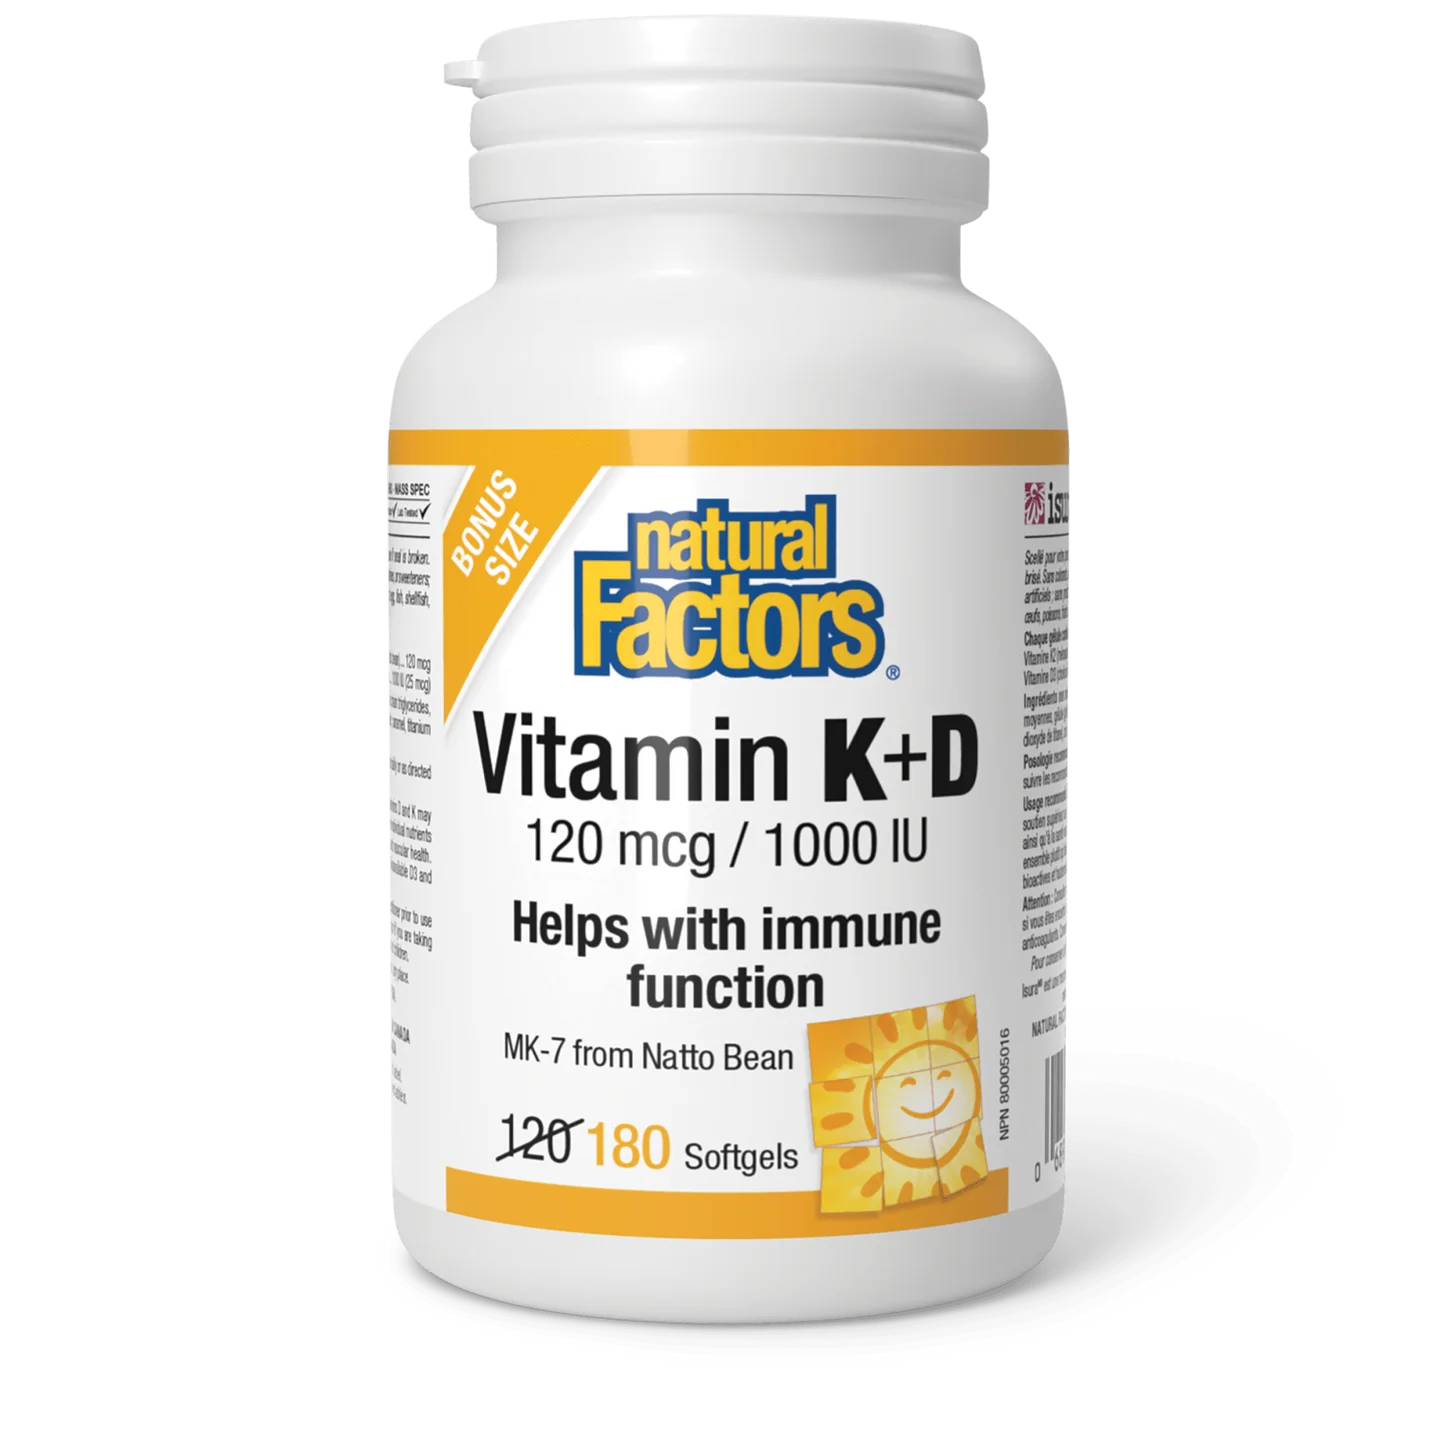 Natural Factors Vitamin K+D 120 mcg/1000 IU bonus (180 softgels)